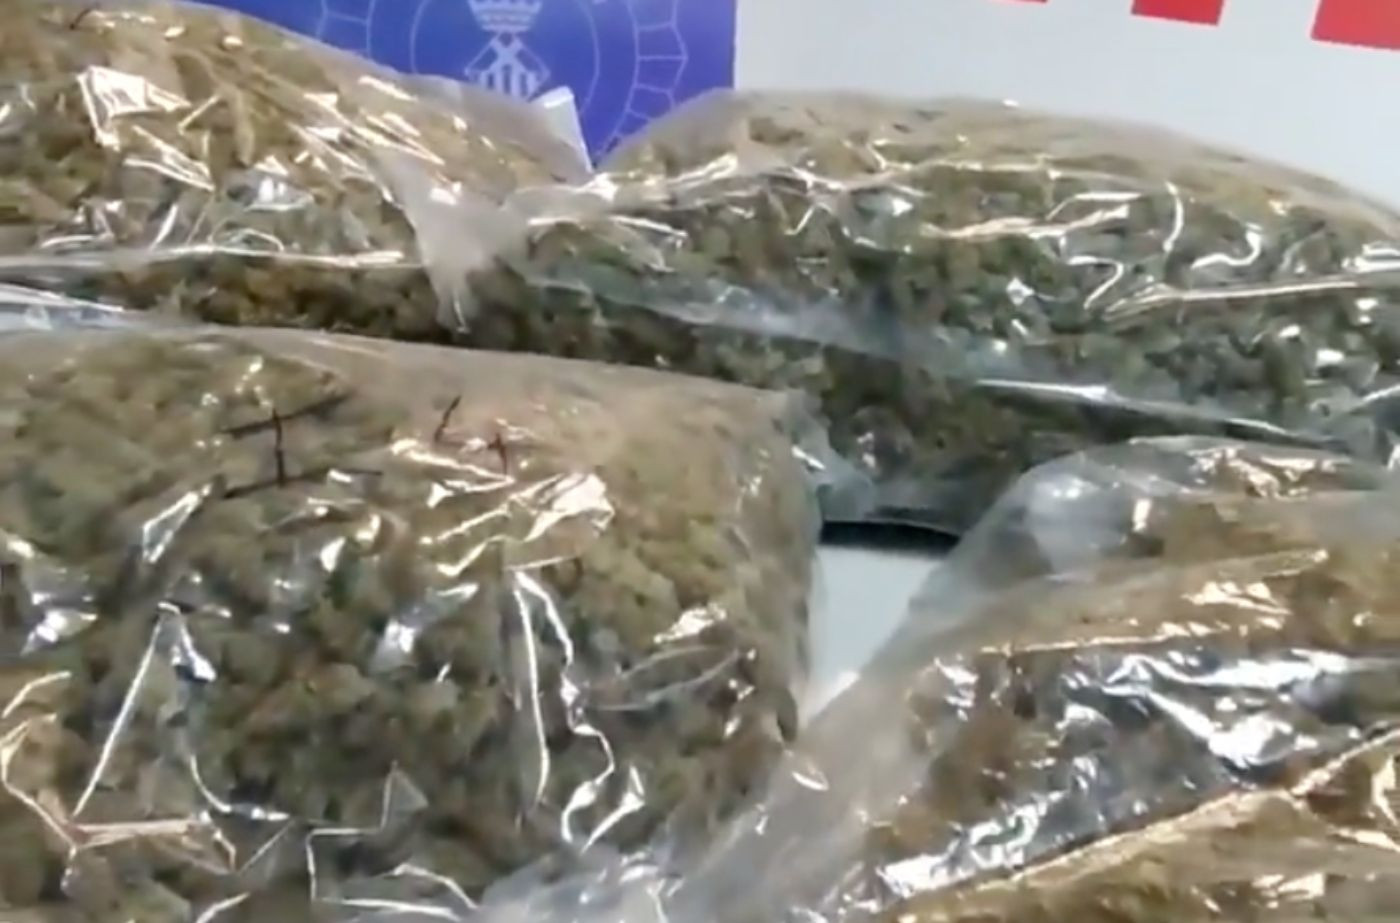 Imagen de archivo de bolsas de marihuana listas para su distribución / MOSSOS D'ESQUADRA